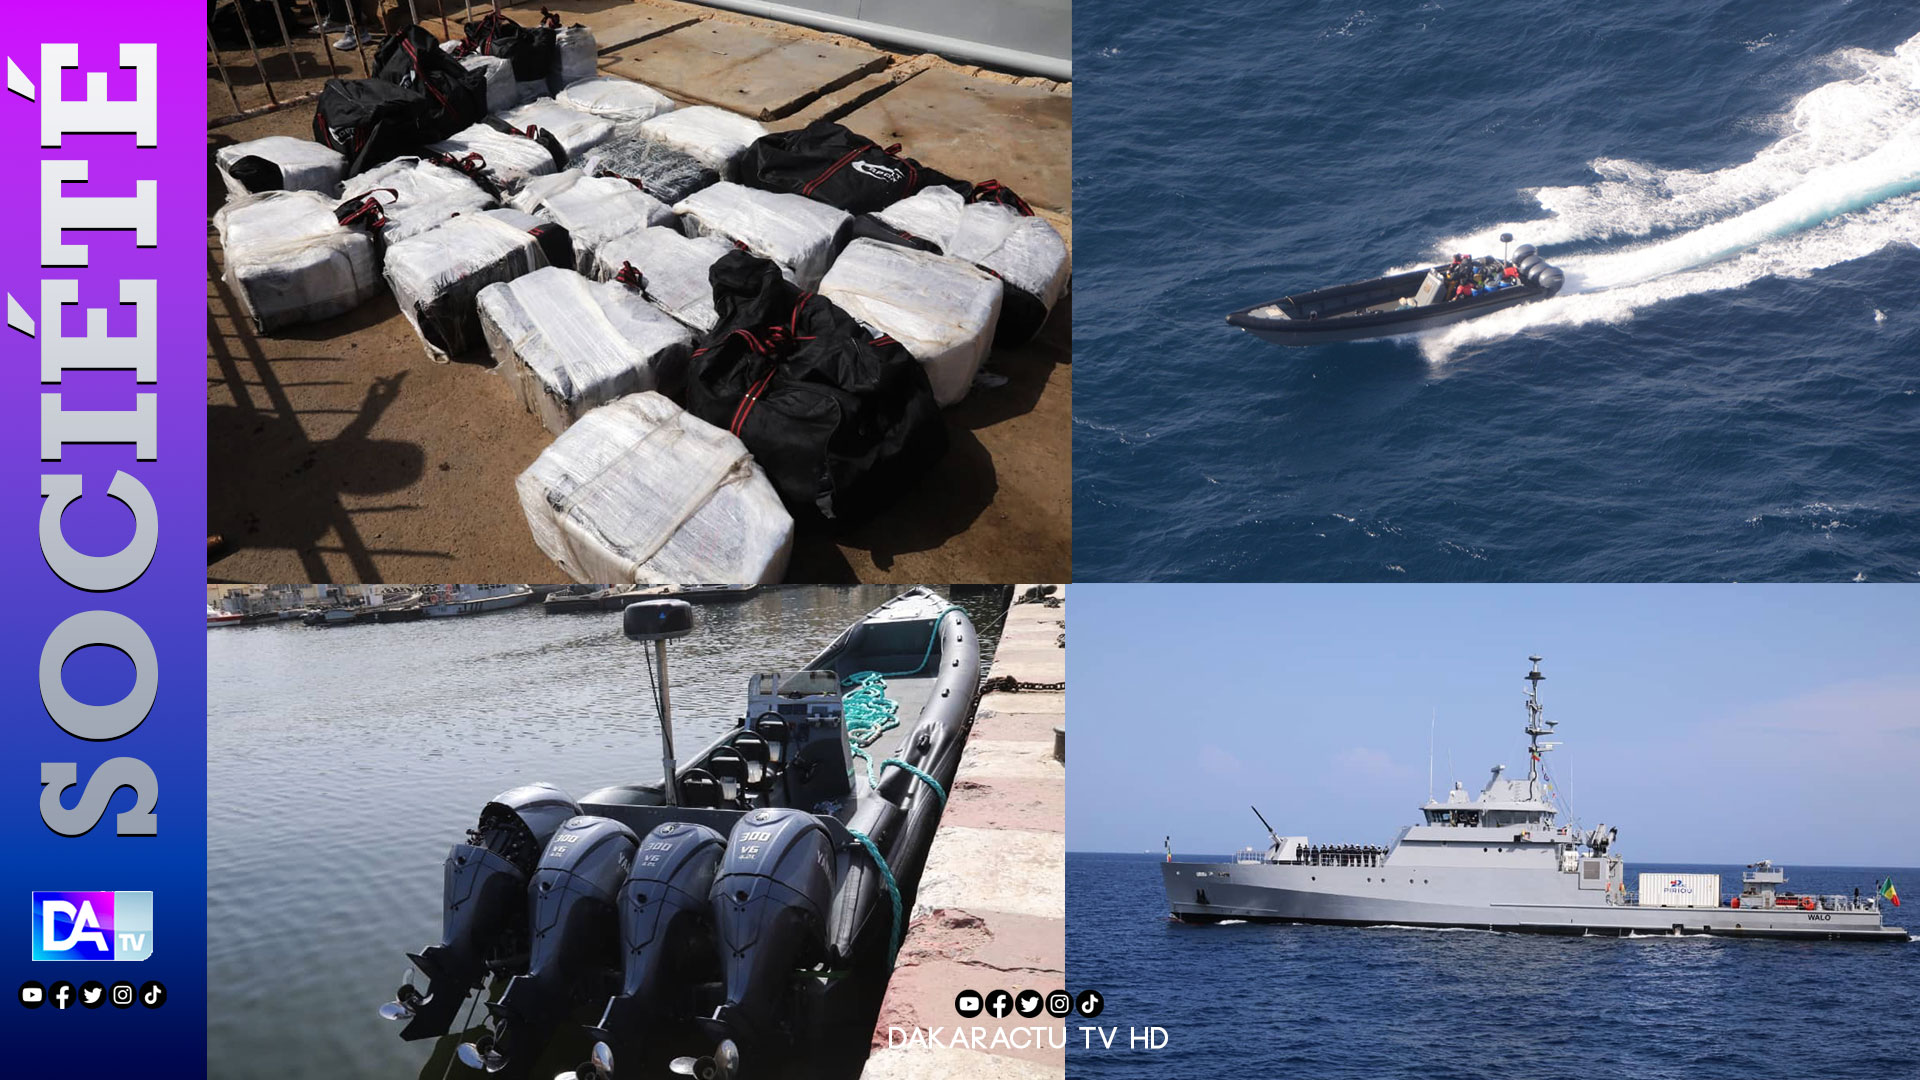 Affaire des 690 kg de cocaïne : le présumé convoyeur va être extradé en Espagne.